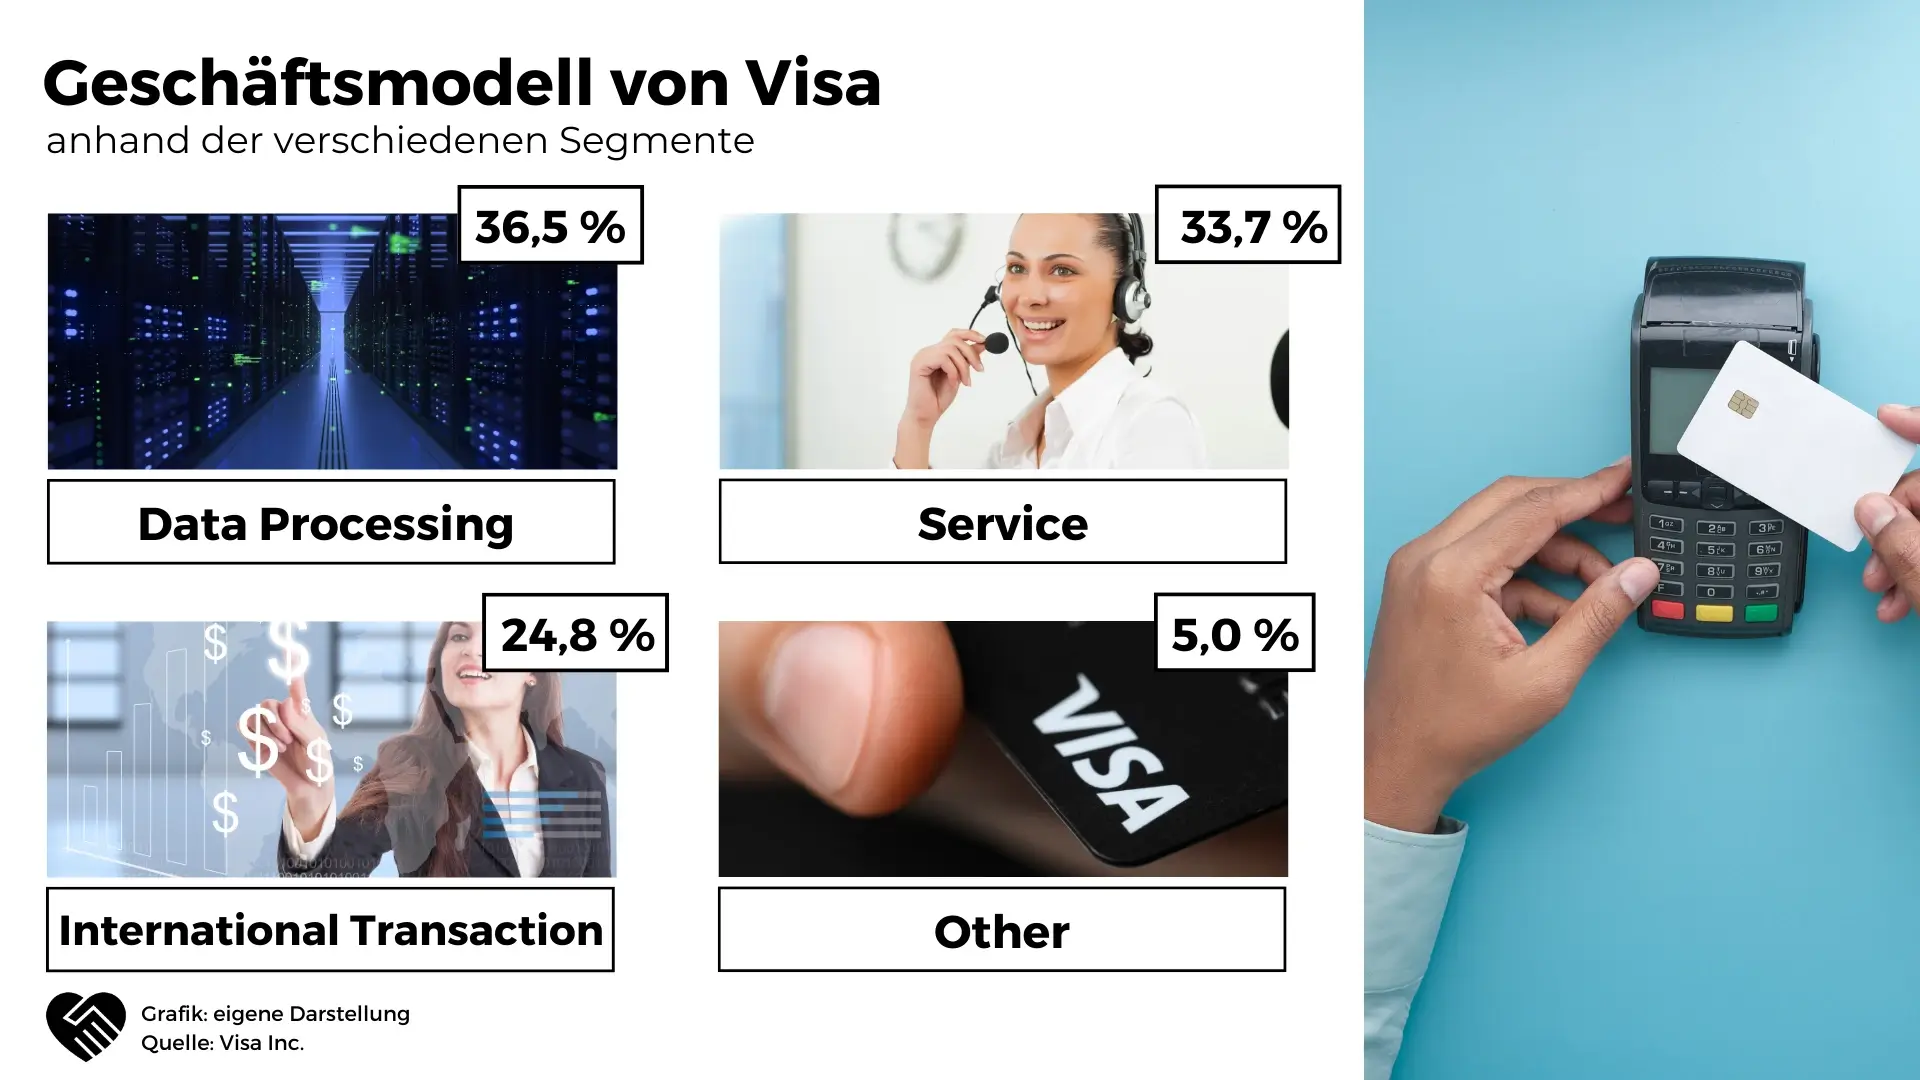 Visa Aktie Analyse - Der Kreditkartenmonopolist